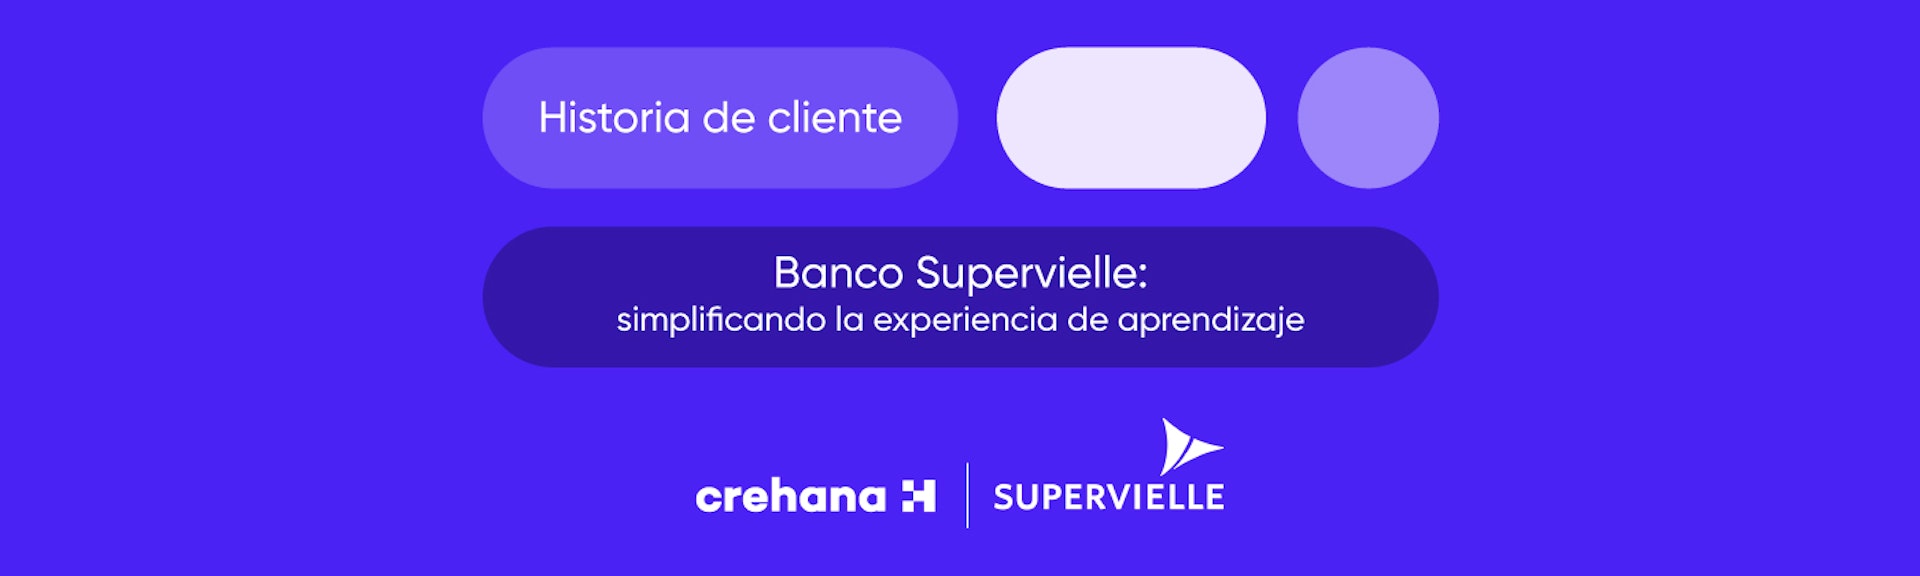 ¿Cómo Crehana ayuda al Banco Supervielle a simplificar la experiencia de aprendizaje?